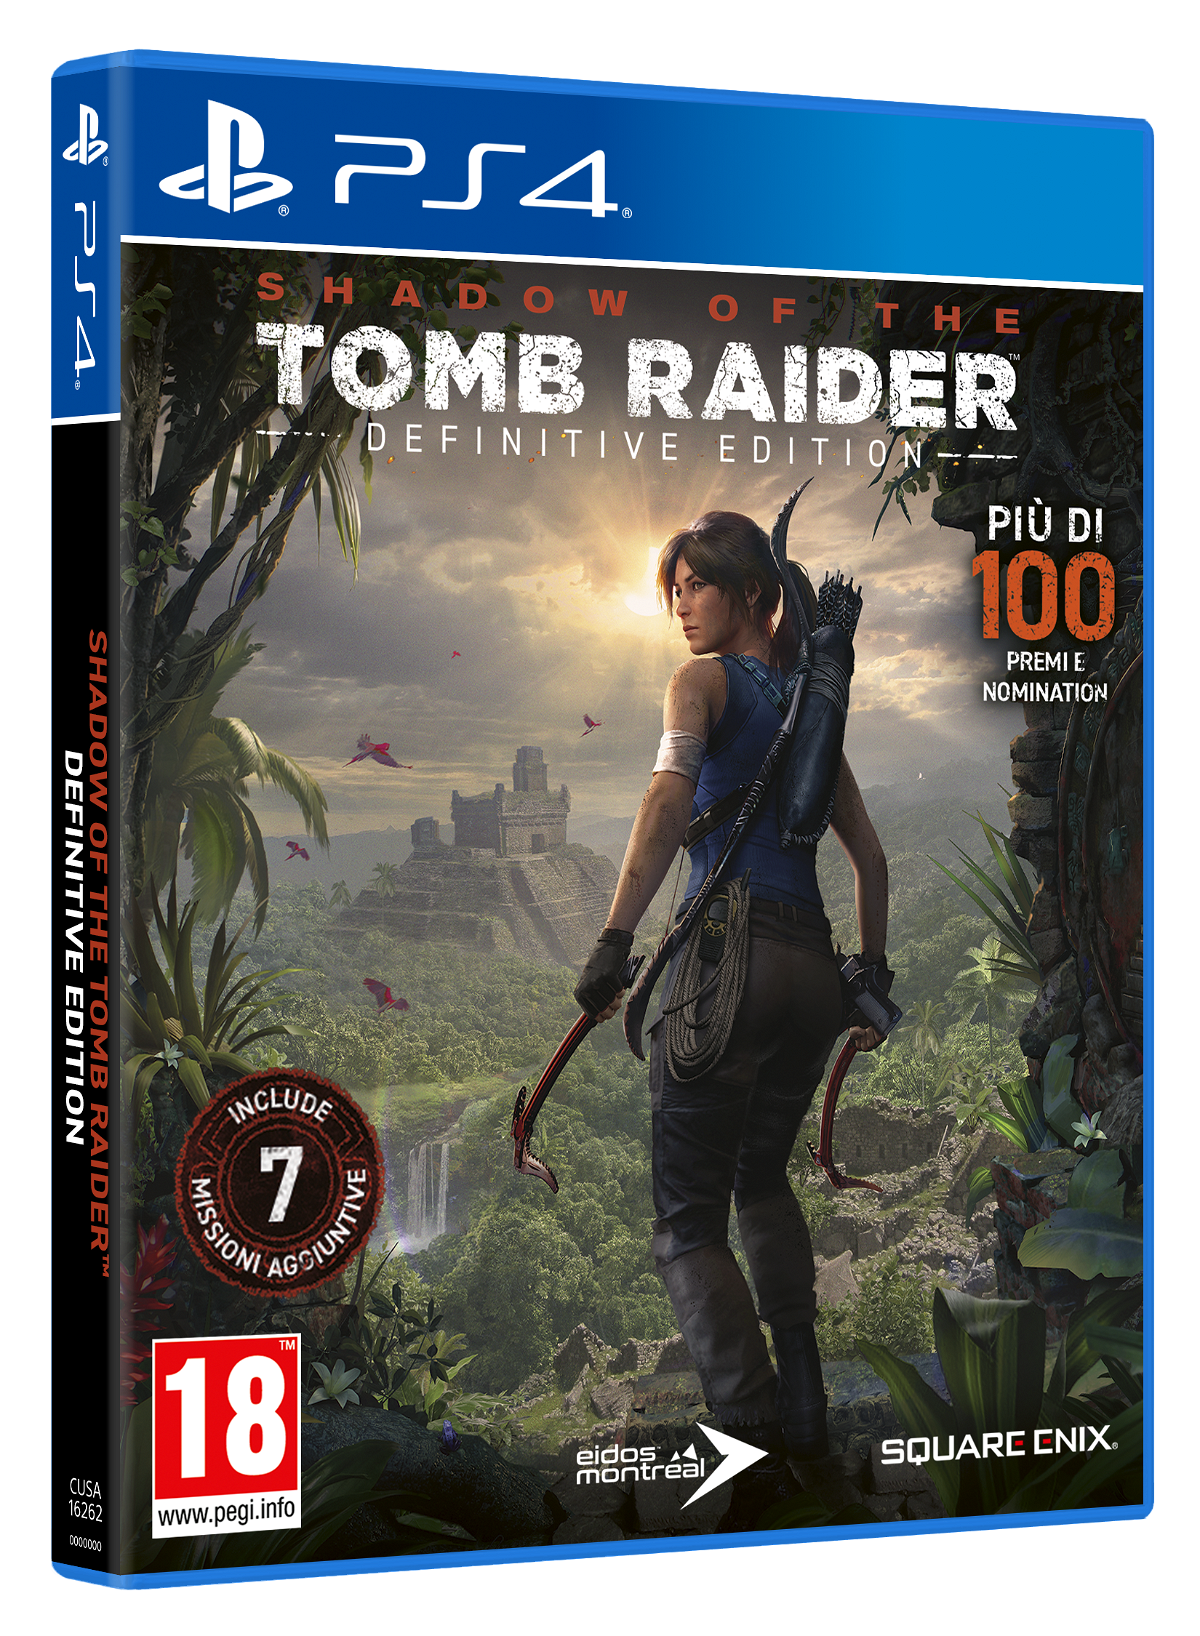 La boxart di Shadow of the Tomb Raider - Definitive Edition